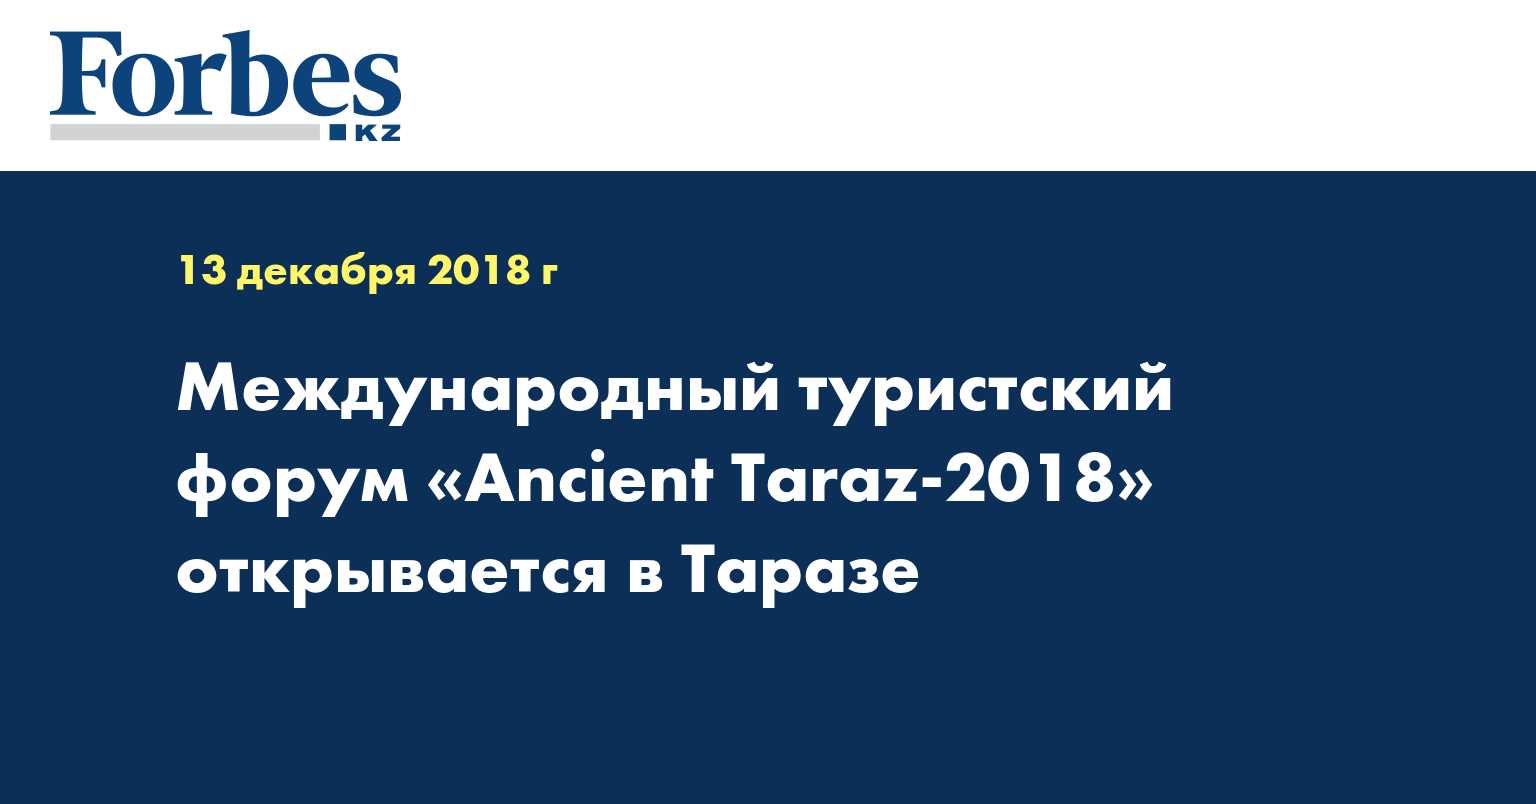 Международный туристский форум «Ancient Taraz-2018» открывается в Таразе